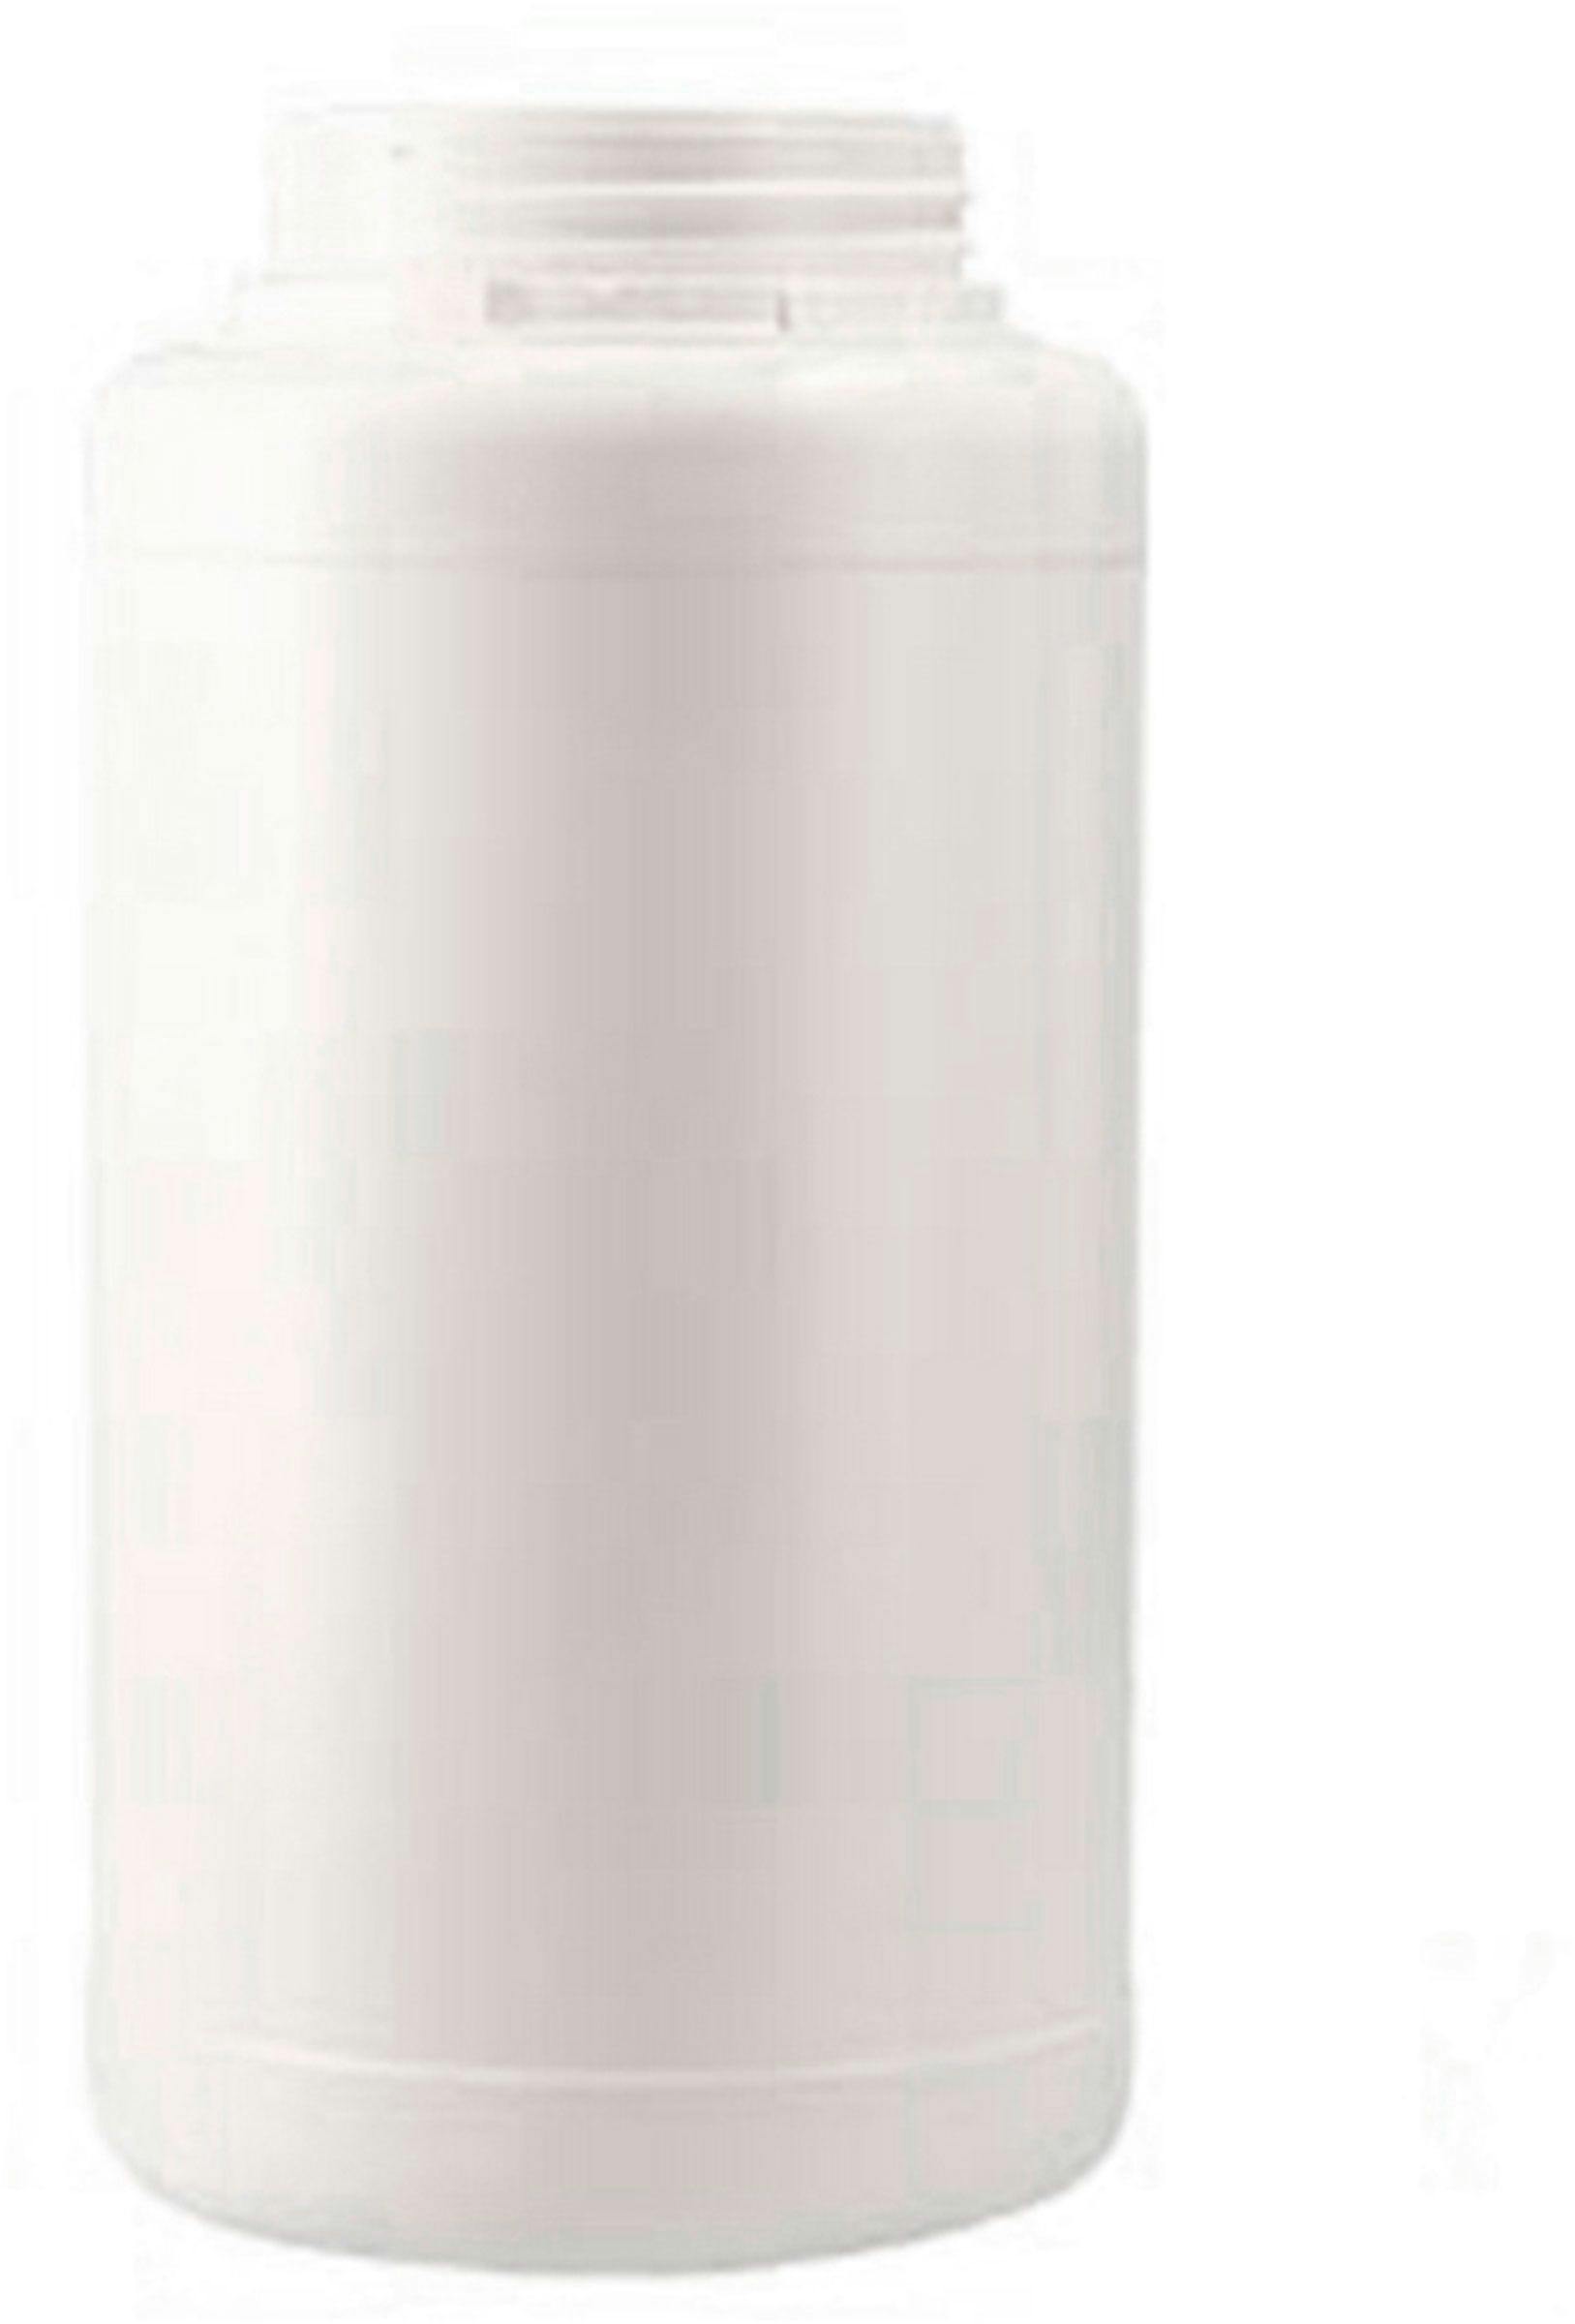 Jar HDPE 500 ml white  D80